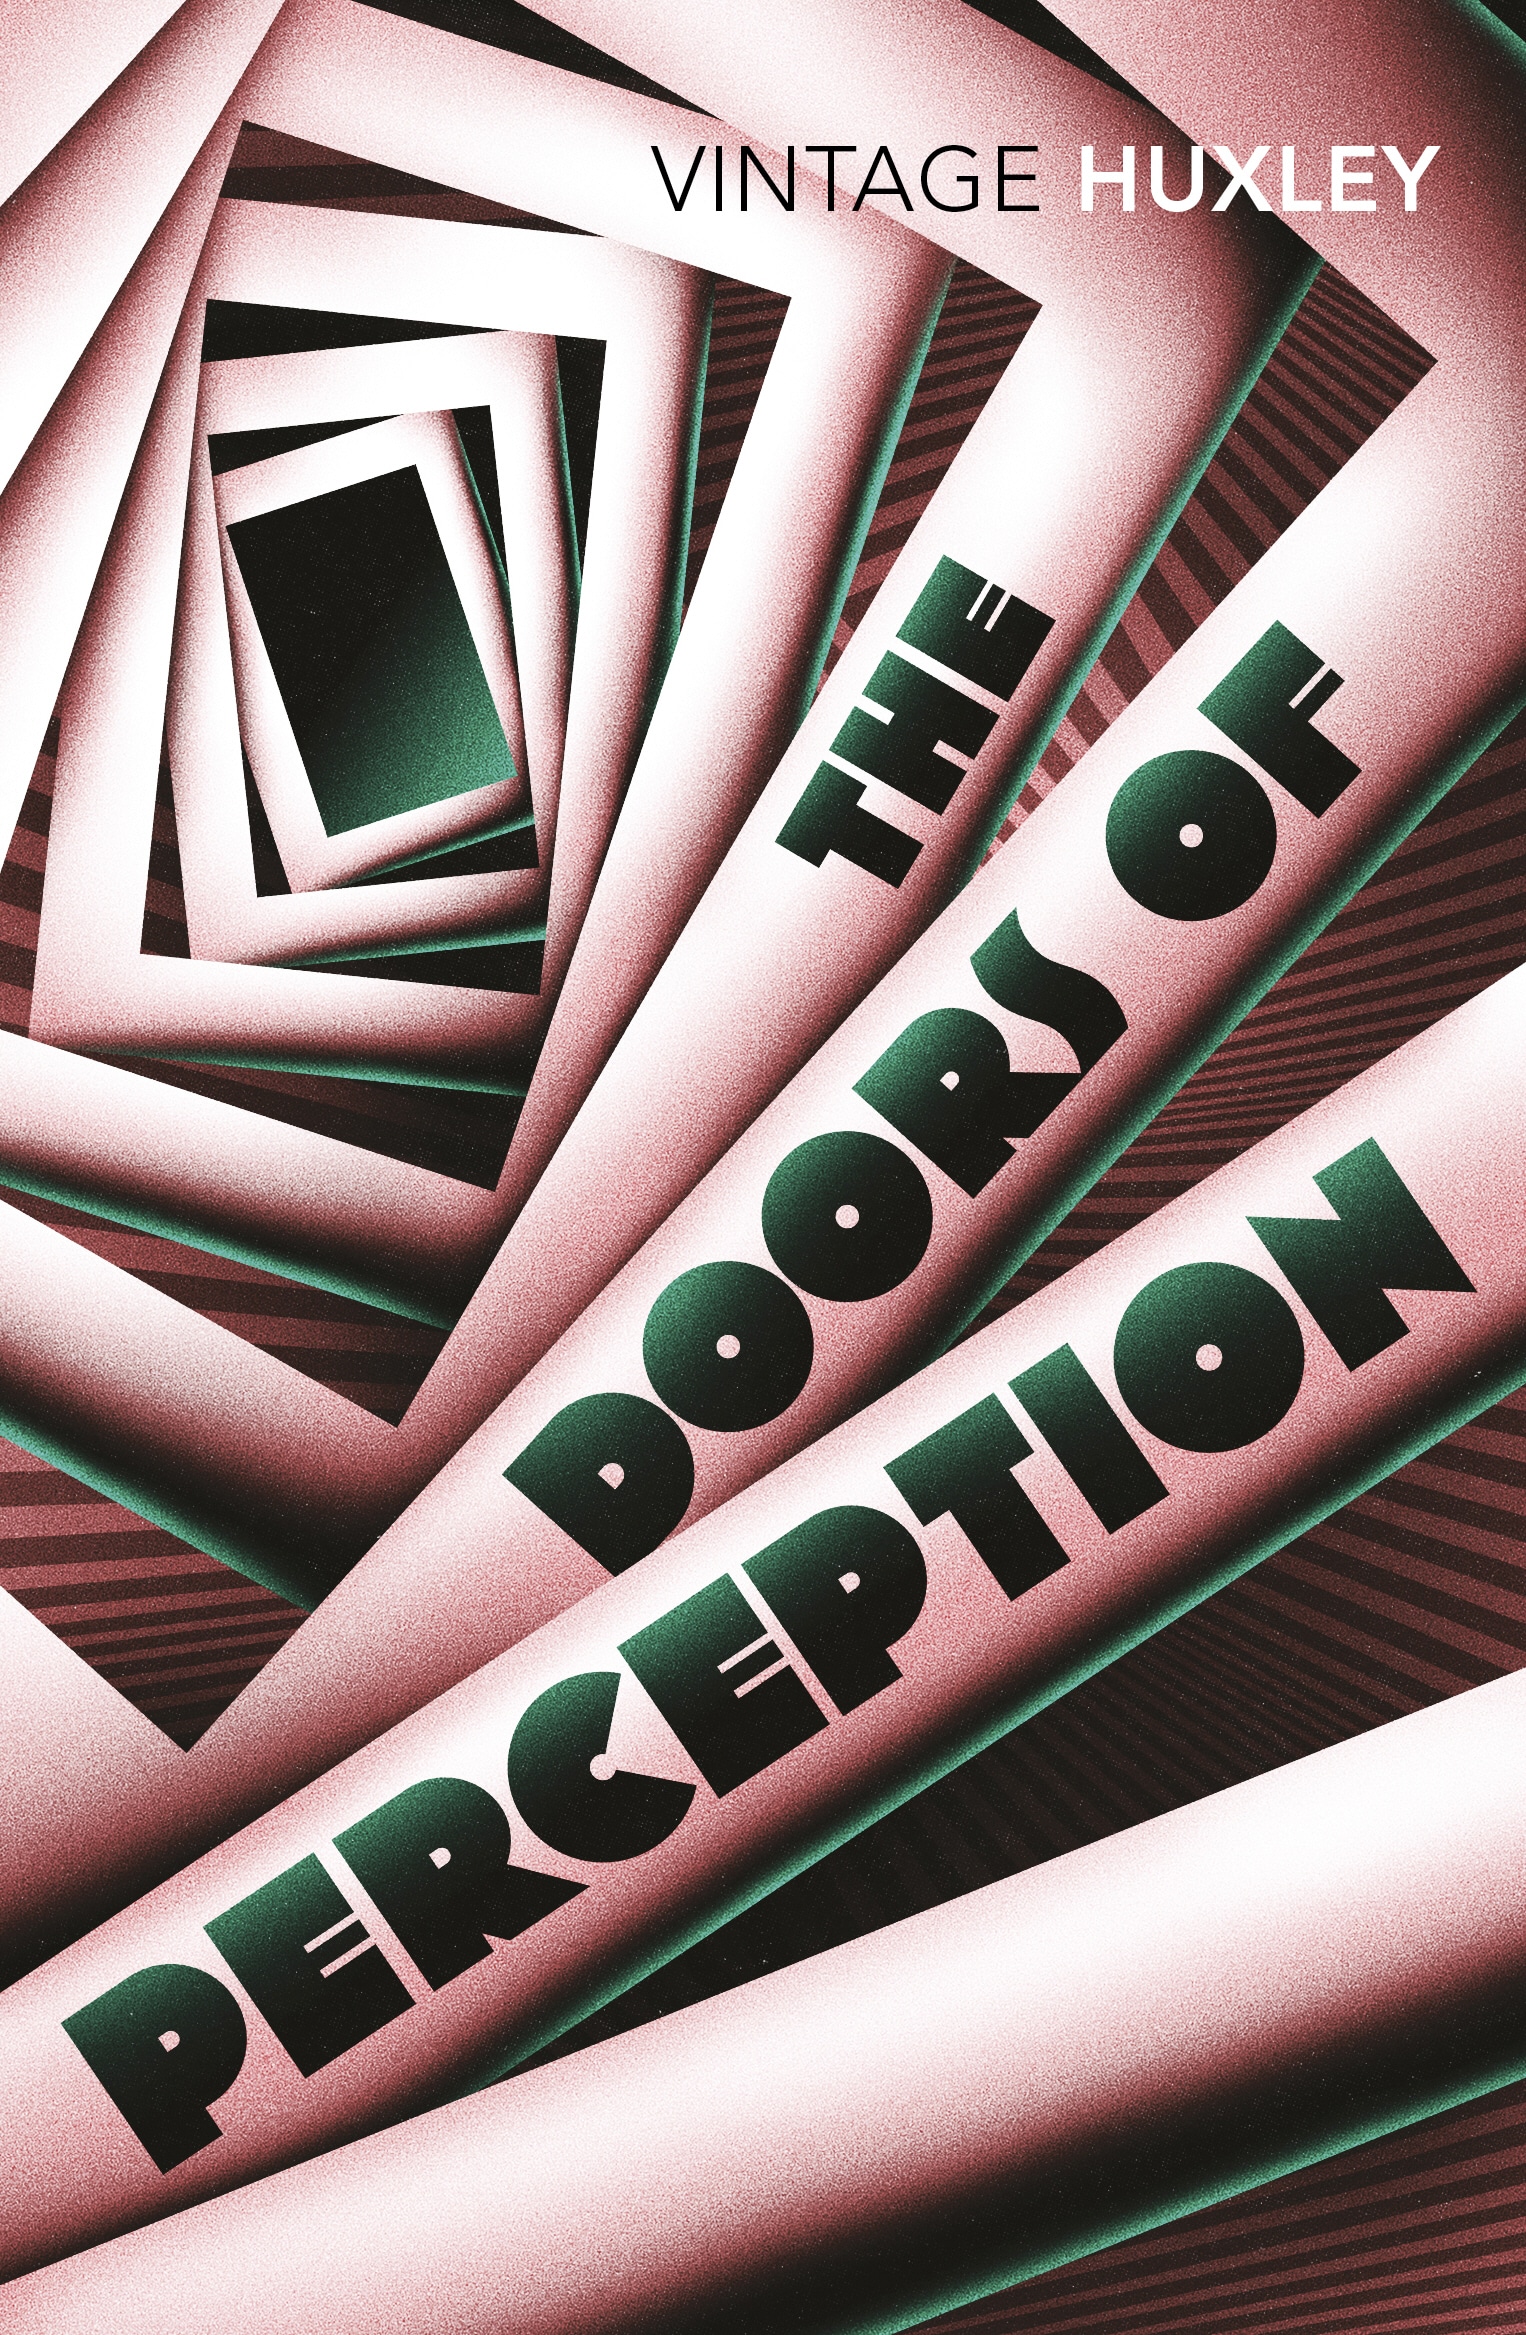 Book “The Doors of Perception” by Aldous Huxley, J G Ballard — September 2, 2004